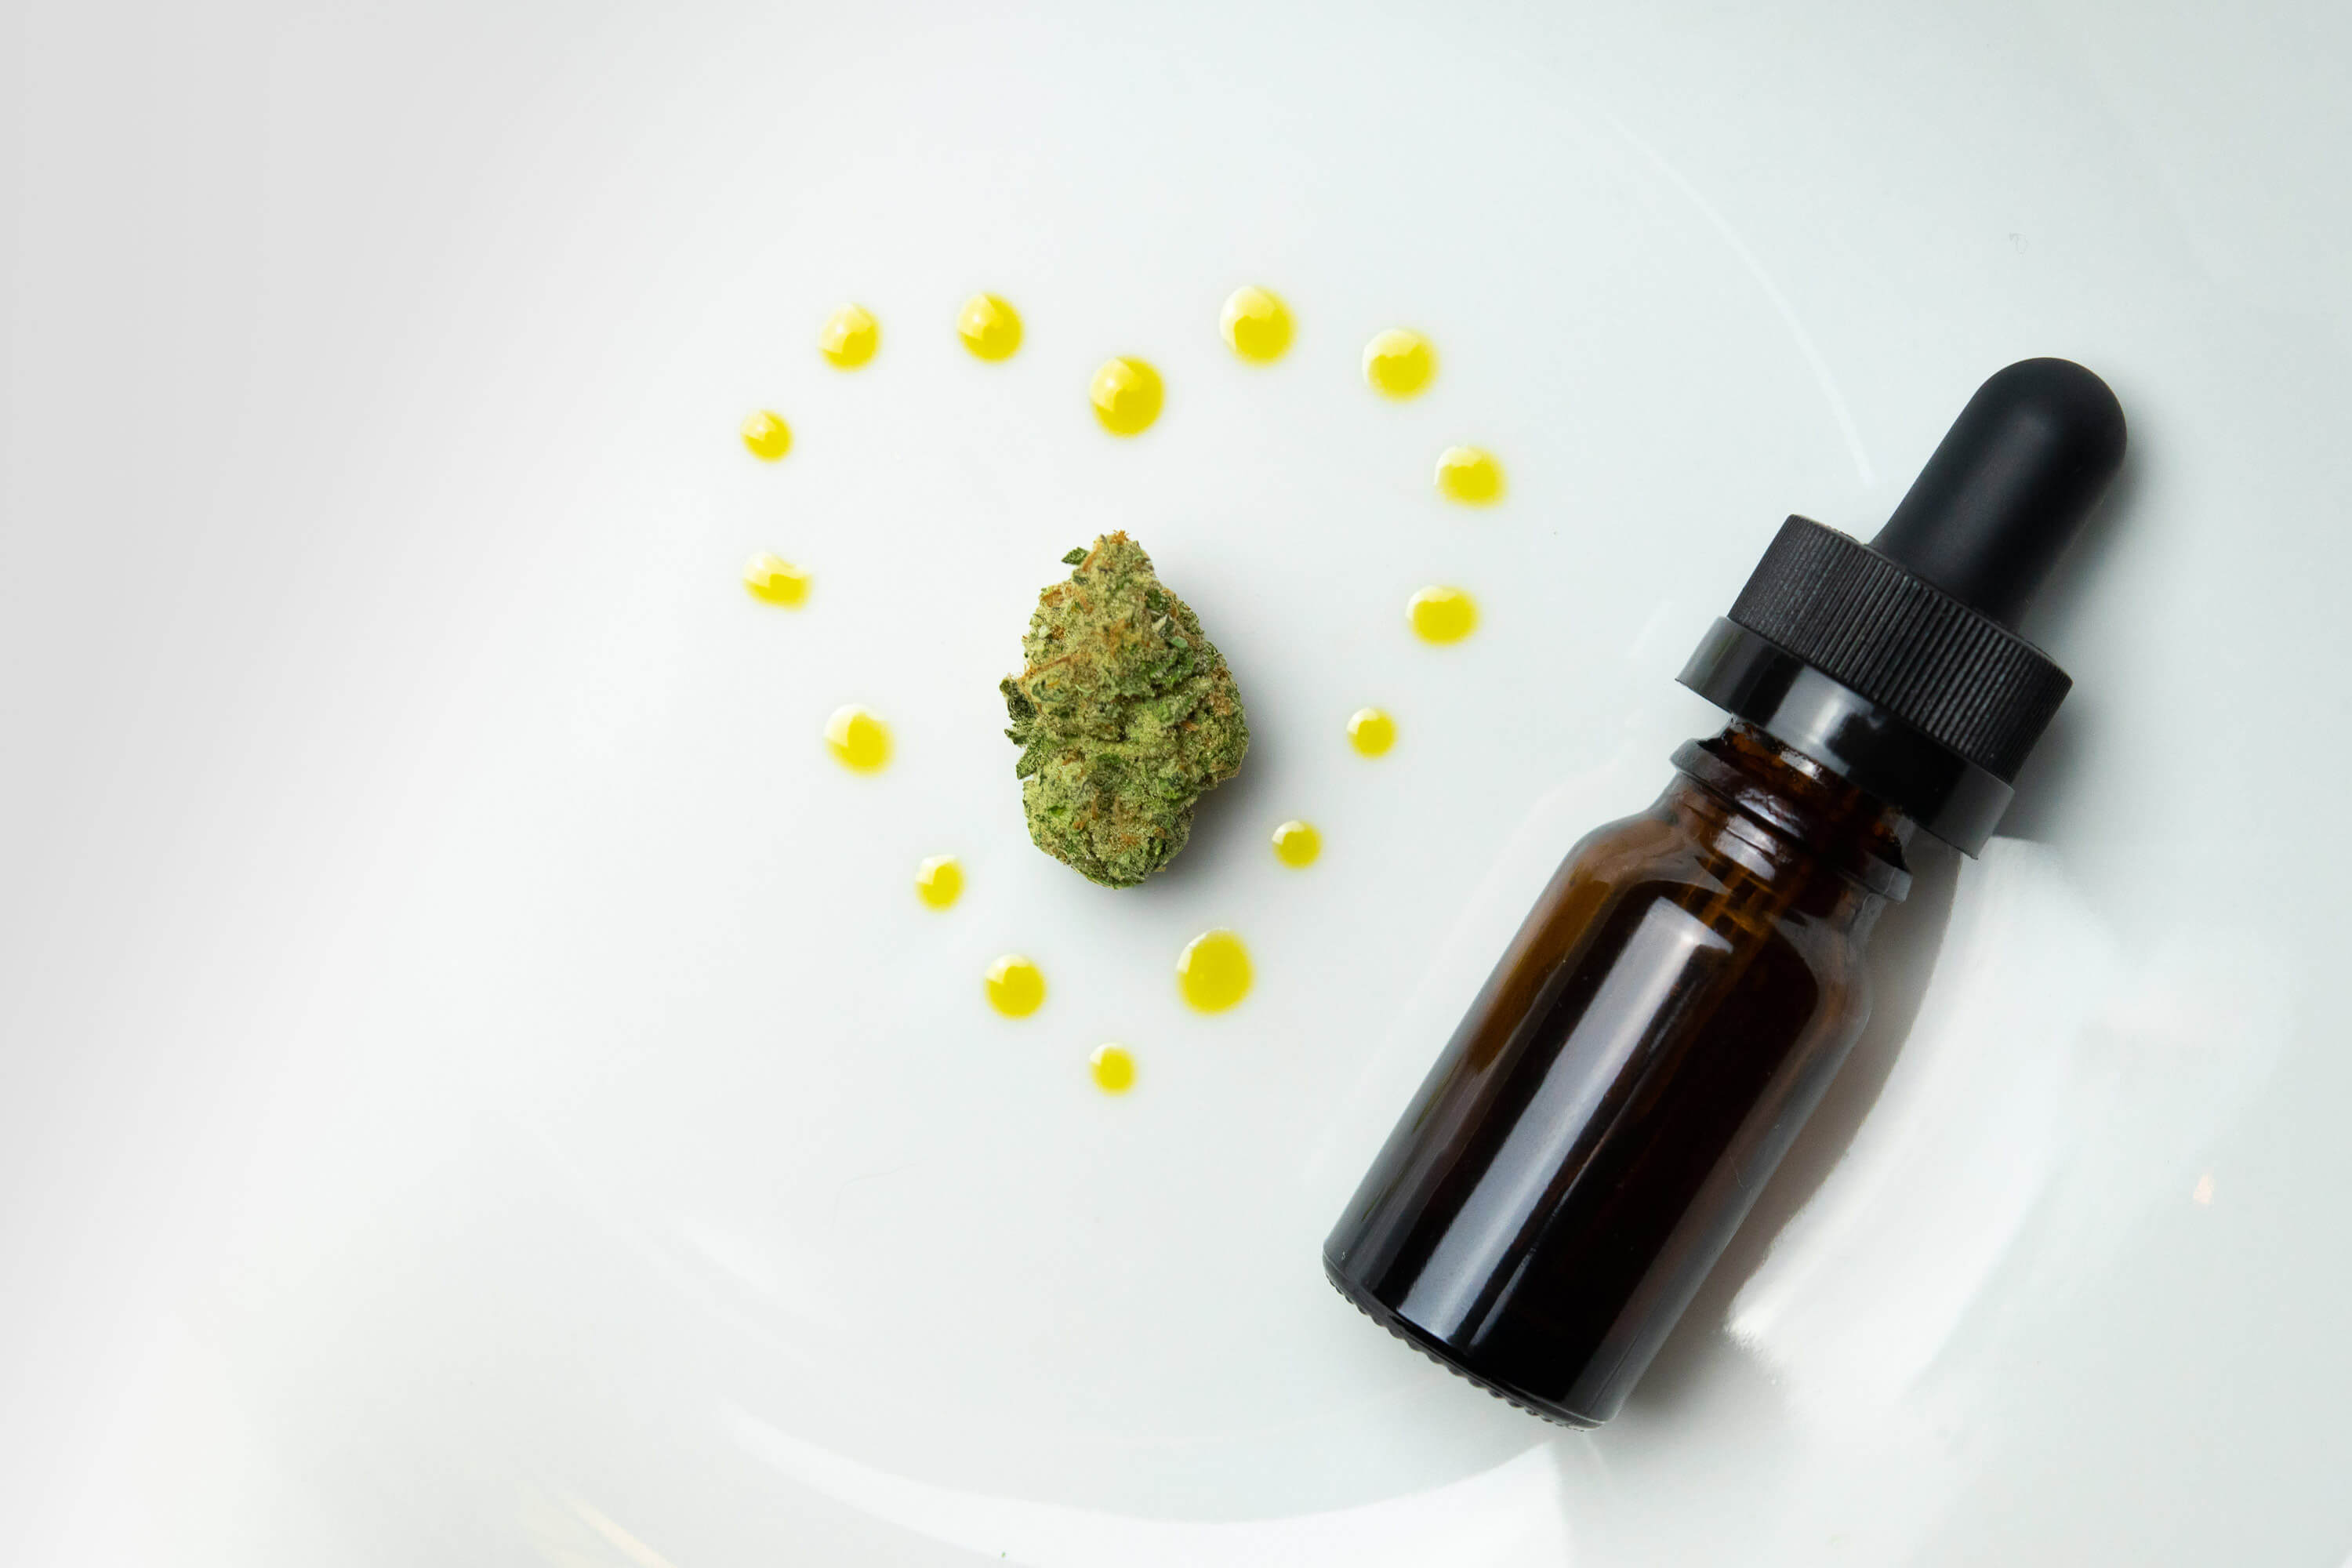 Cannabis Bud and CBD Oil Vial